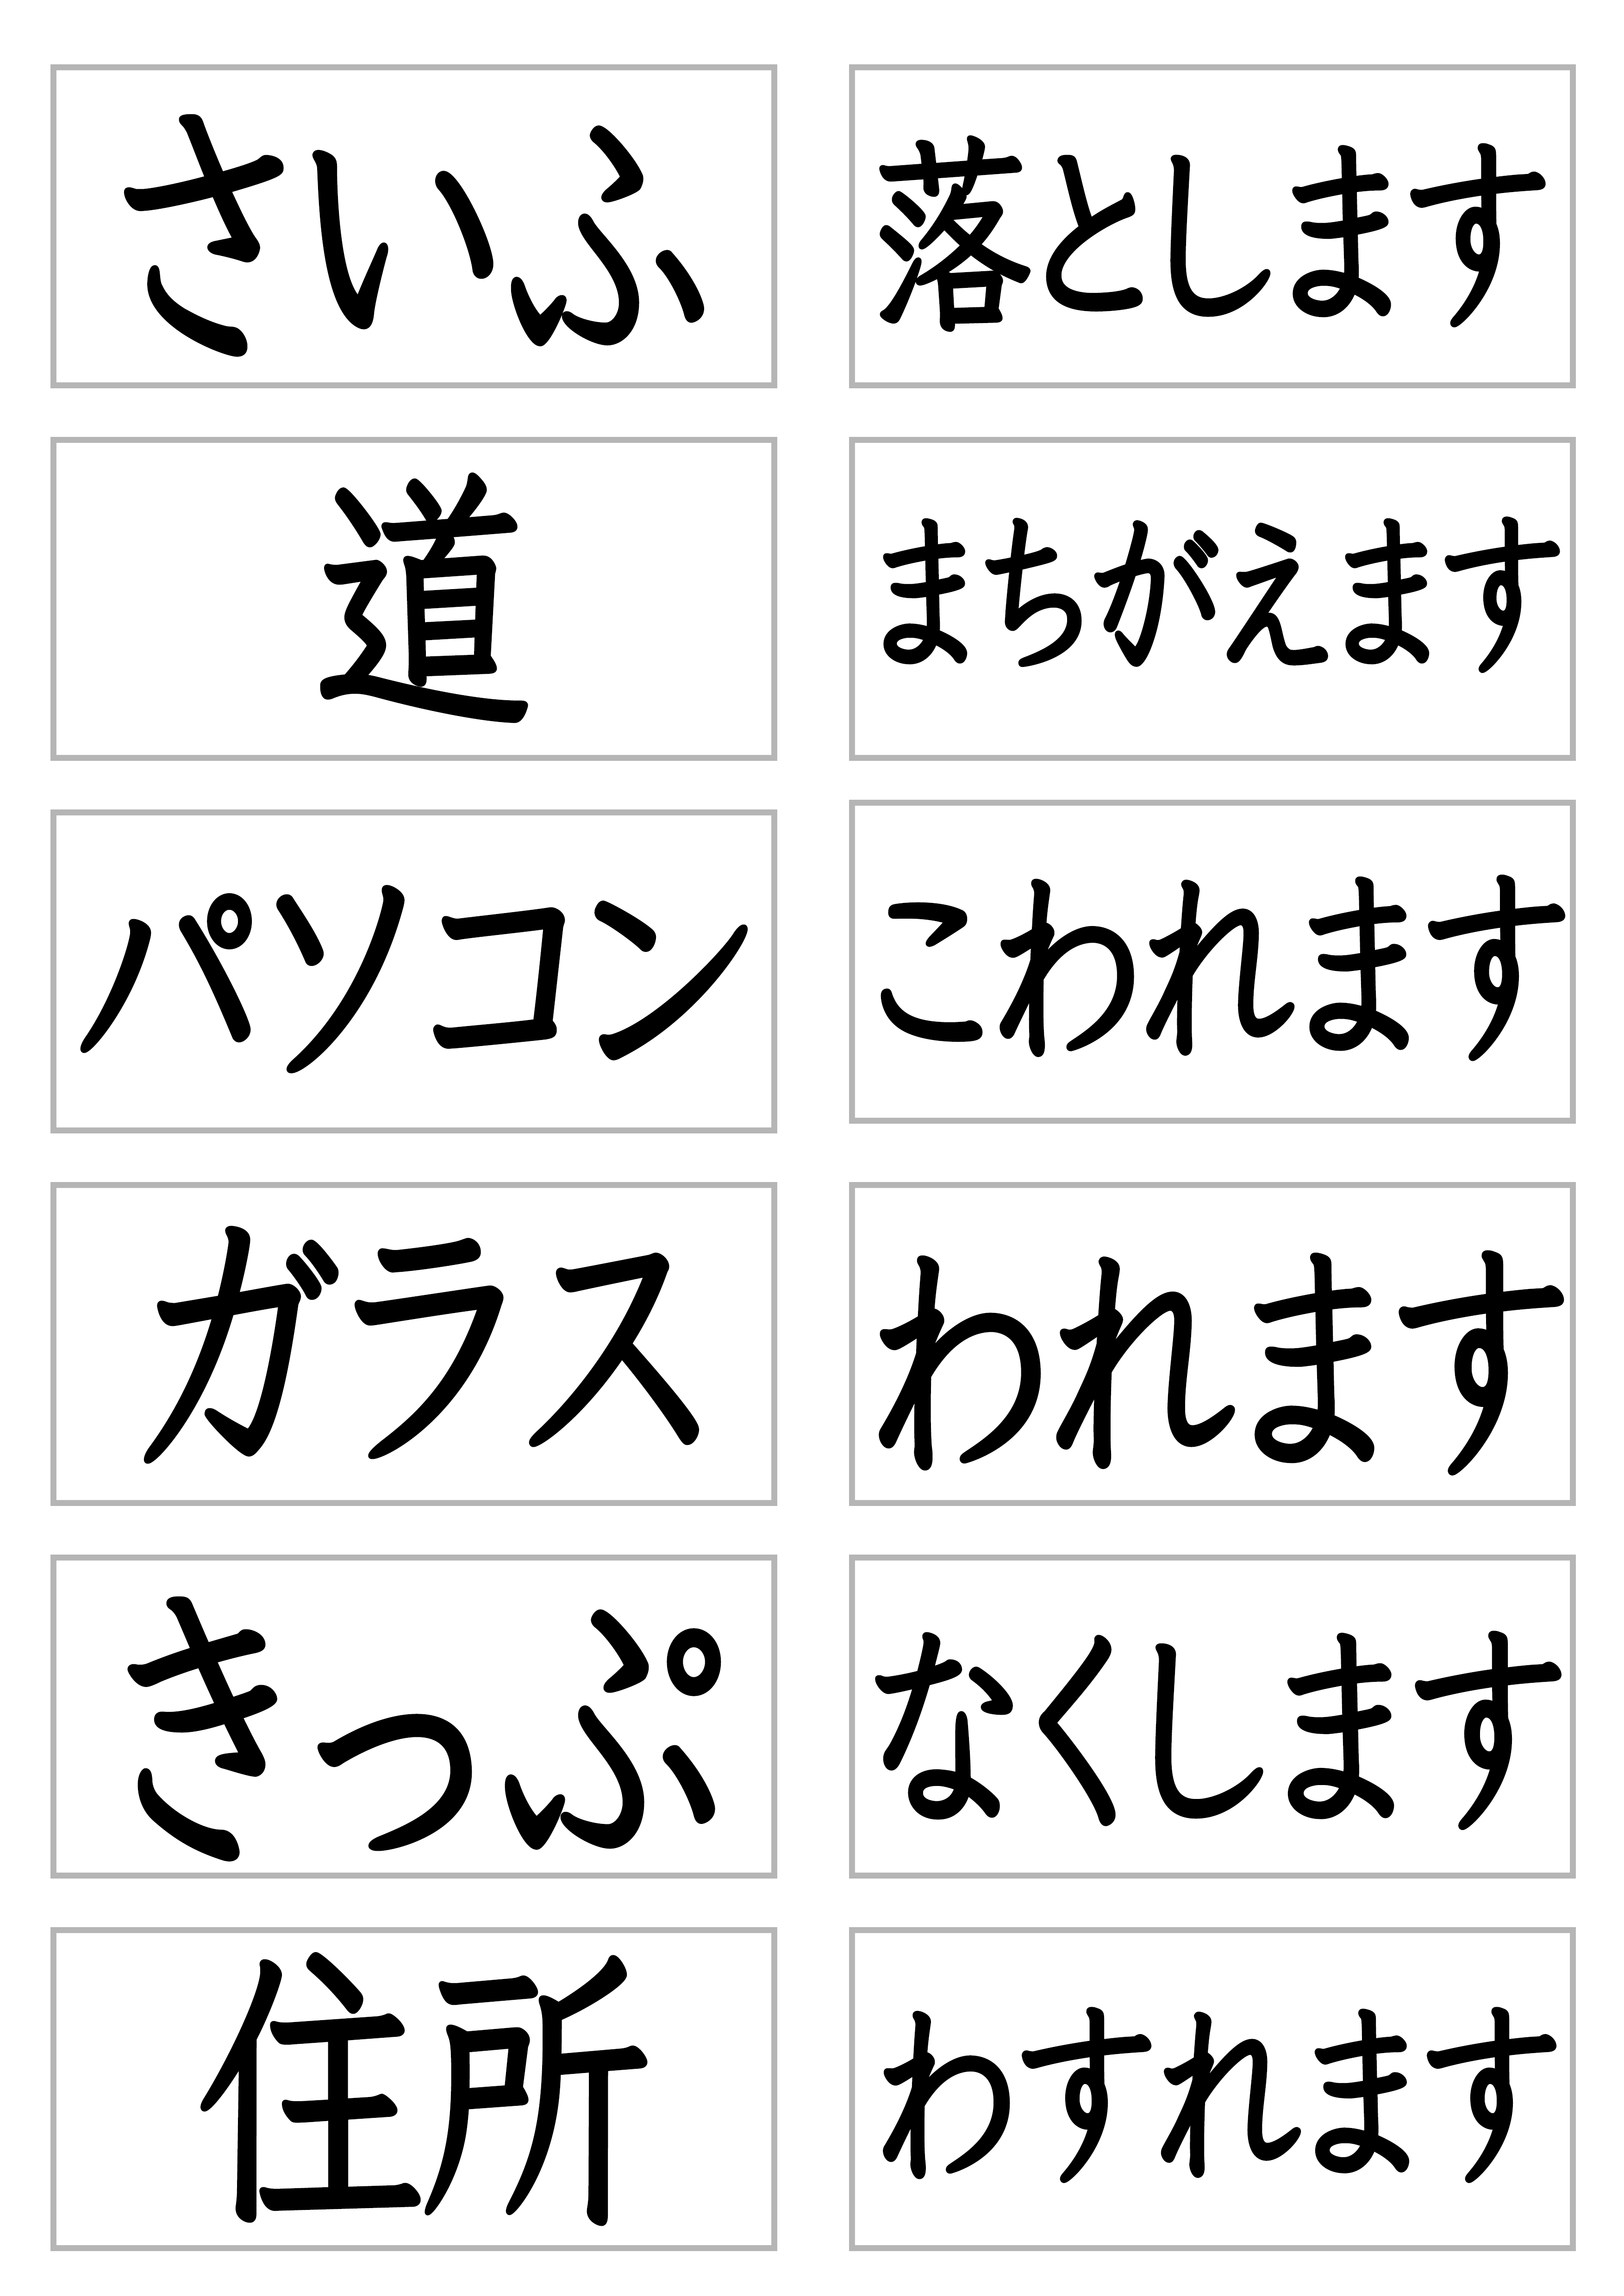 みんなの日本語29課文字カード